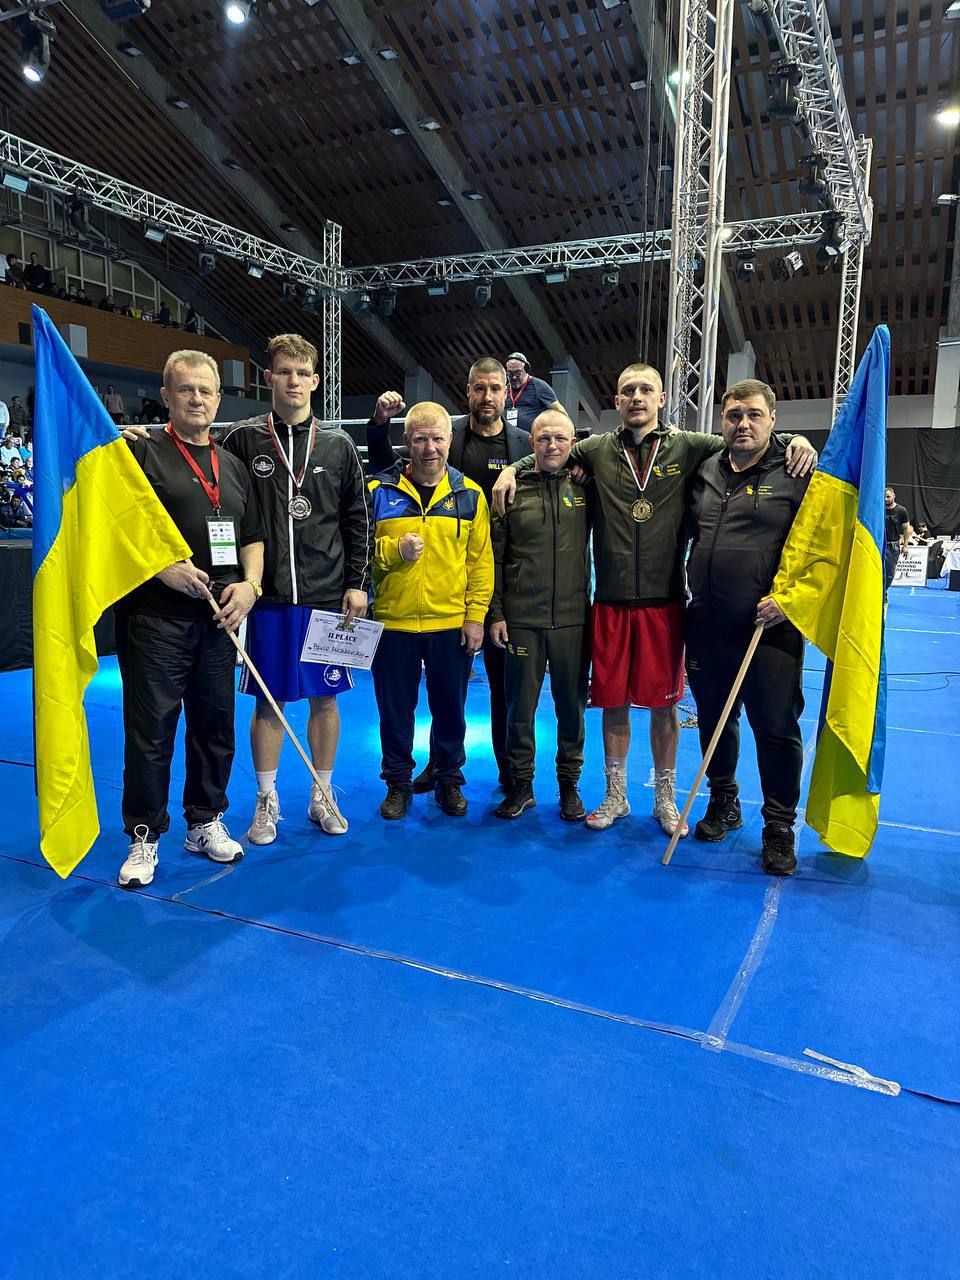 Закінчився 75-й ювілейний турнір “Странджа”, у активі української команди 6 медалей різного гатунку